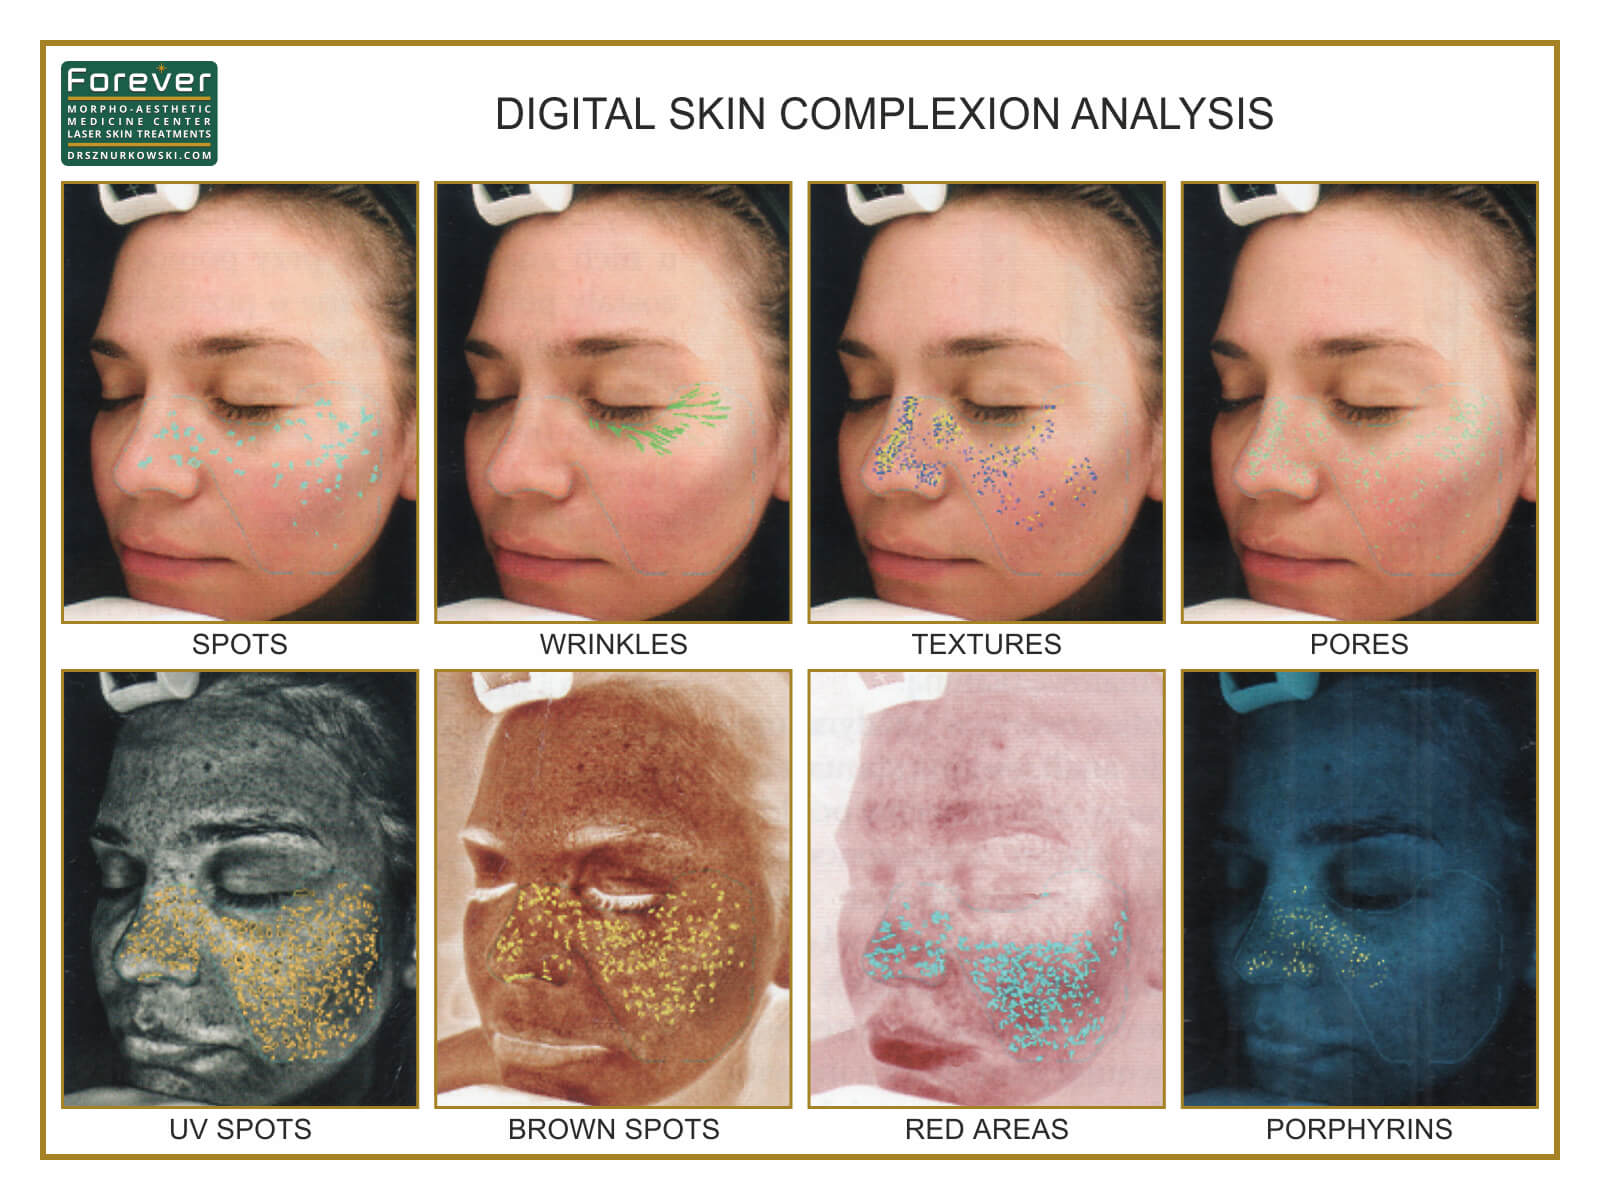 Digital Skin Complexion Analysis (80x60) EN.jpg